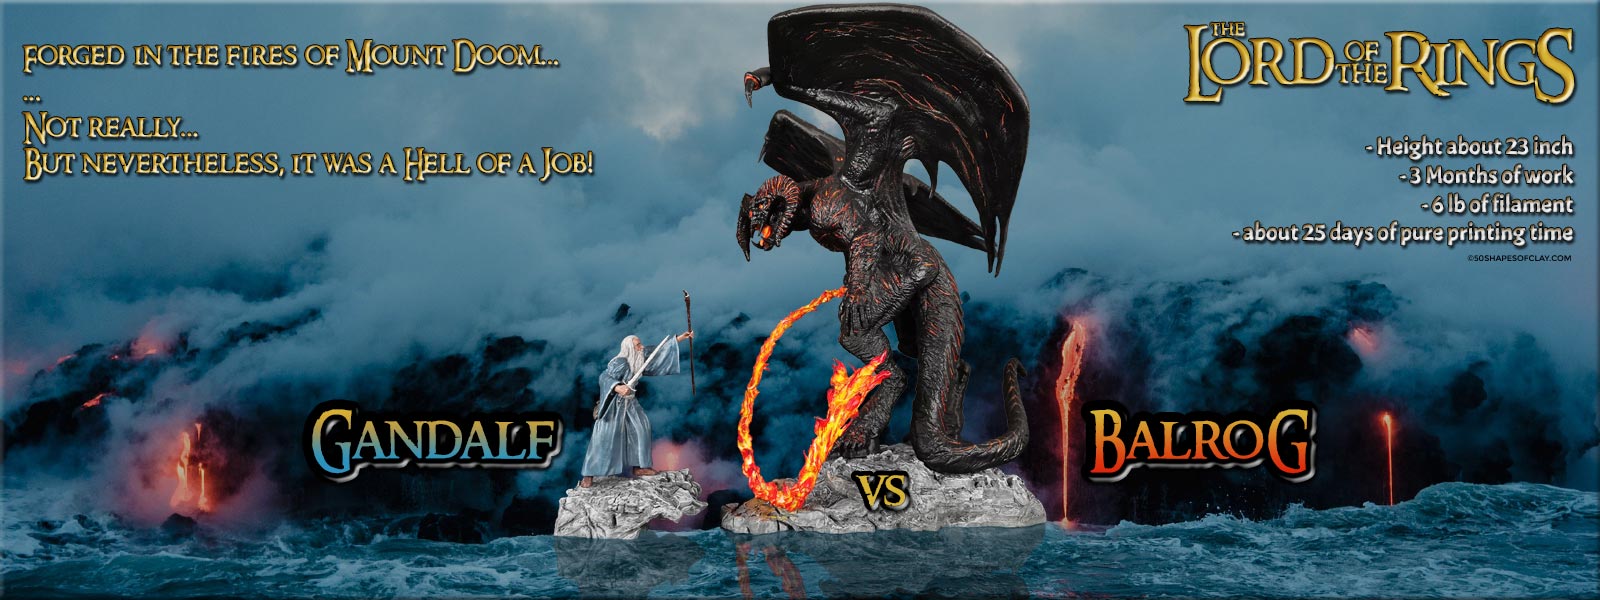 Cover-Balrog-vs-Gandalf